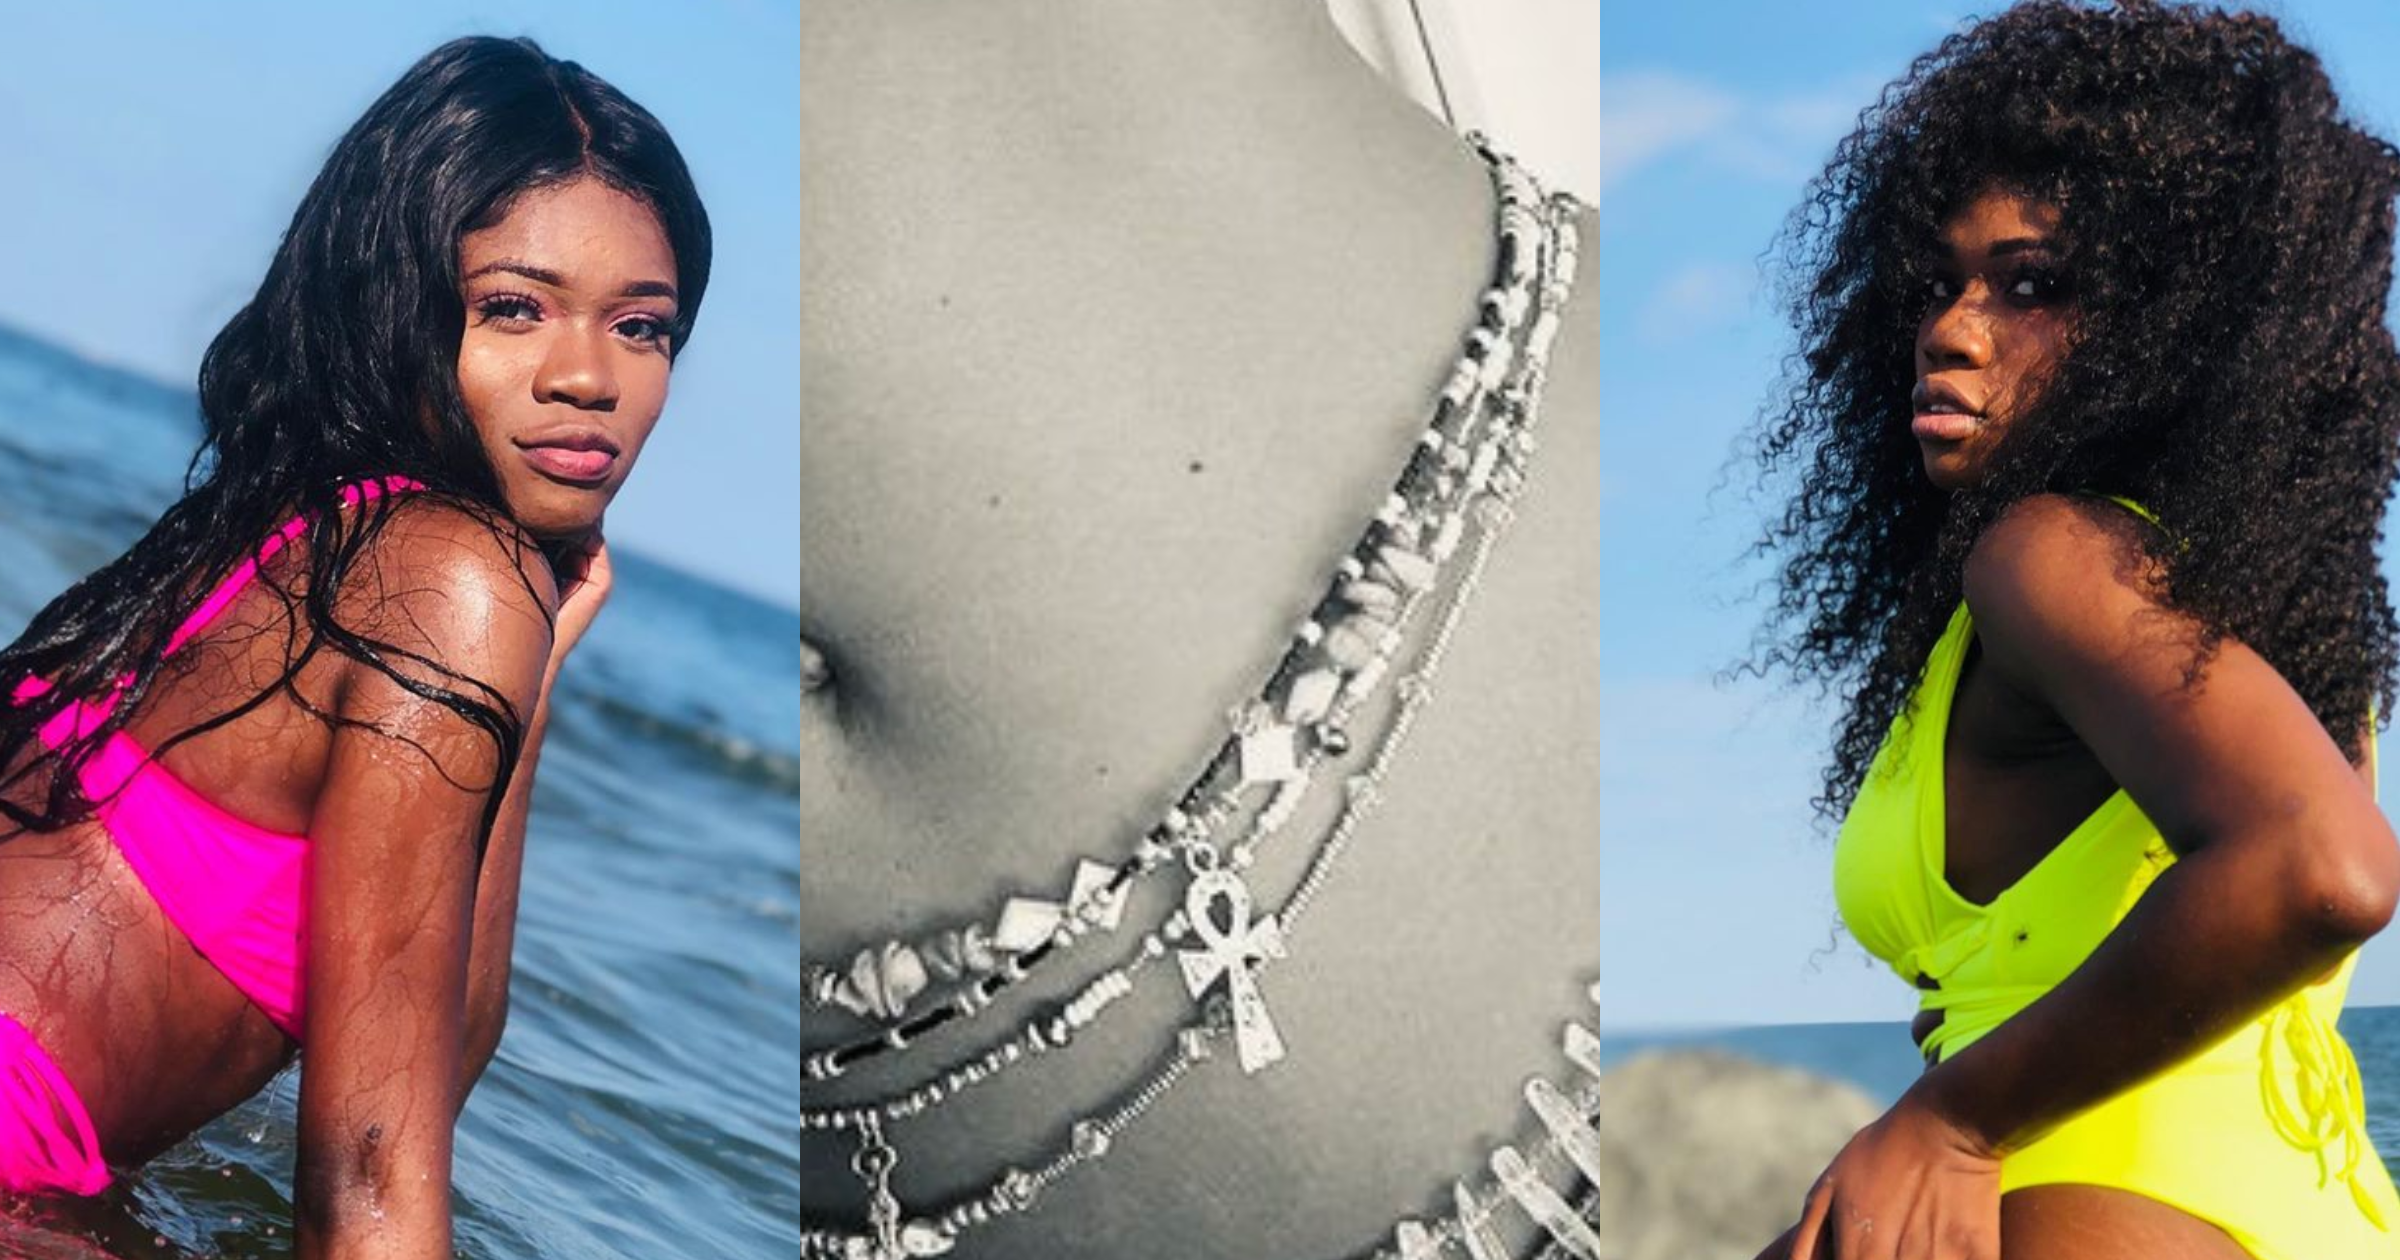 Ladies show off varieties of waist beads in new Twitter challenge (photos)